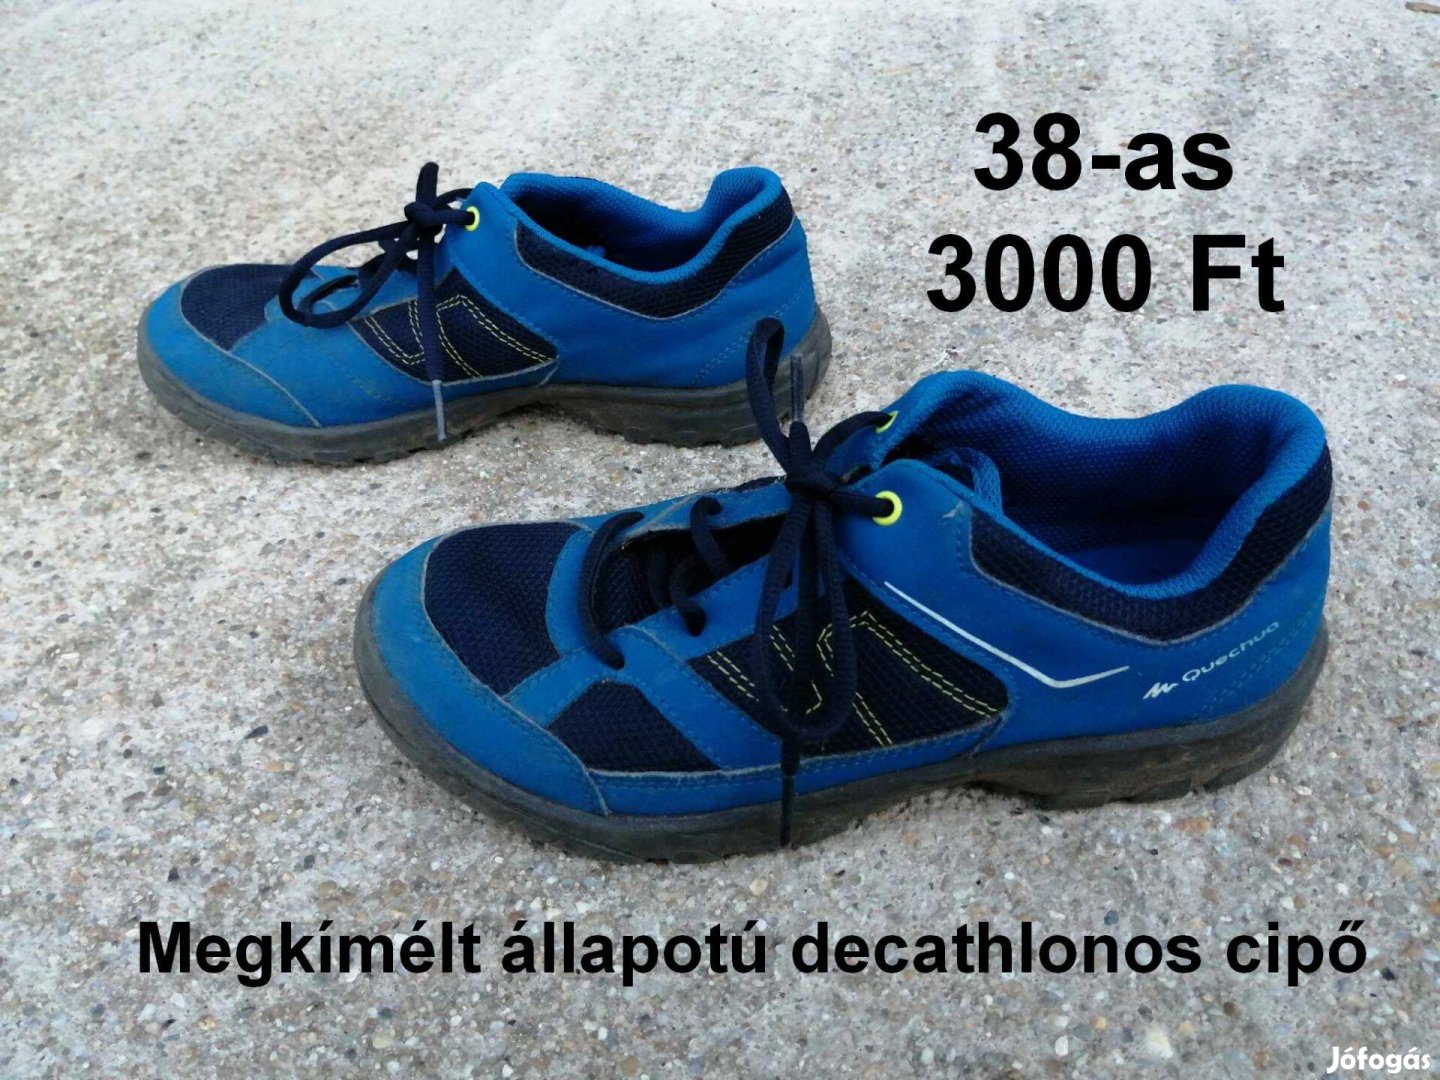 38-as decathlonos sport cipő eladó!